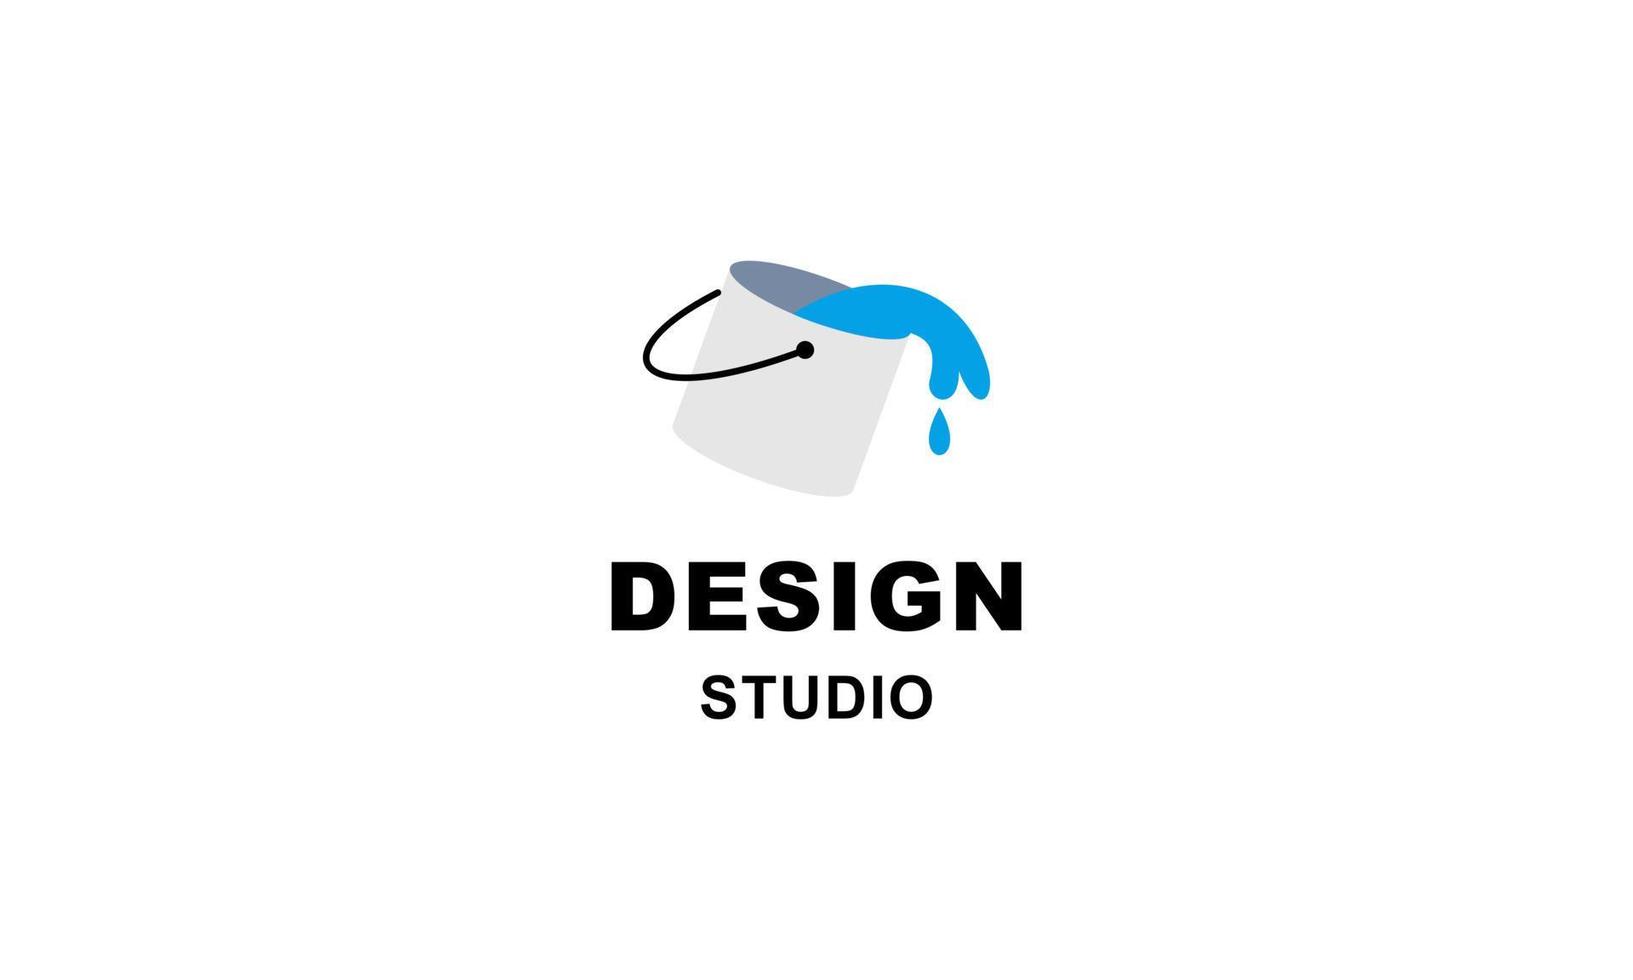 logo dello strumento grafico e studio di web design vettore